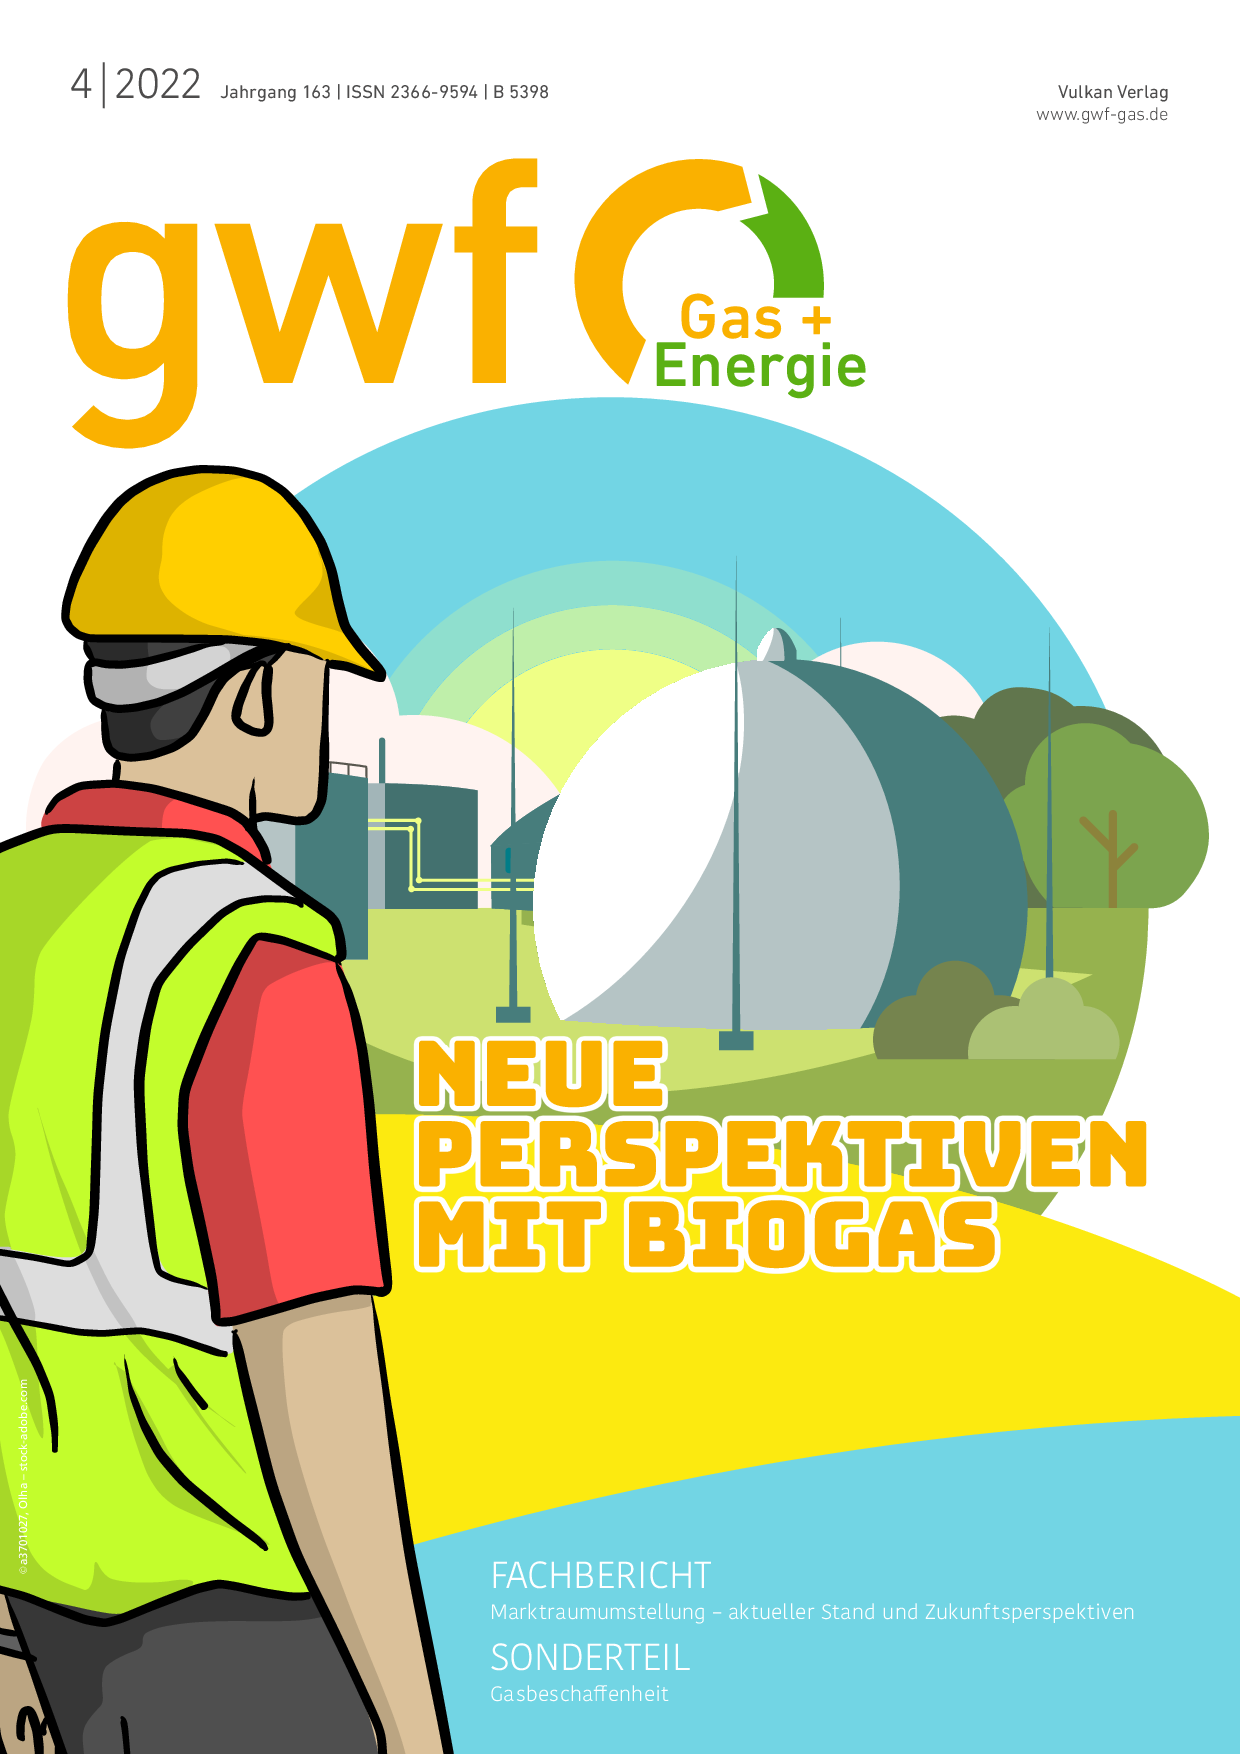 gwf Gas+Energie - 04 2022